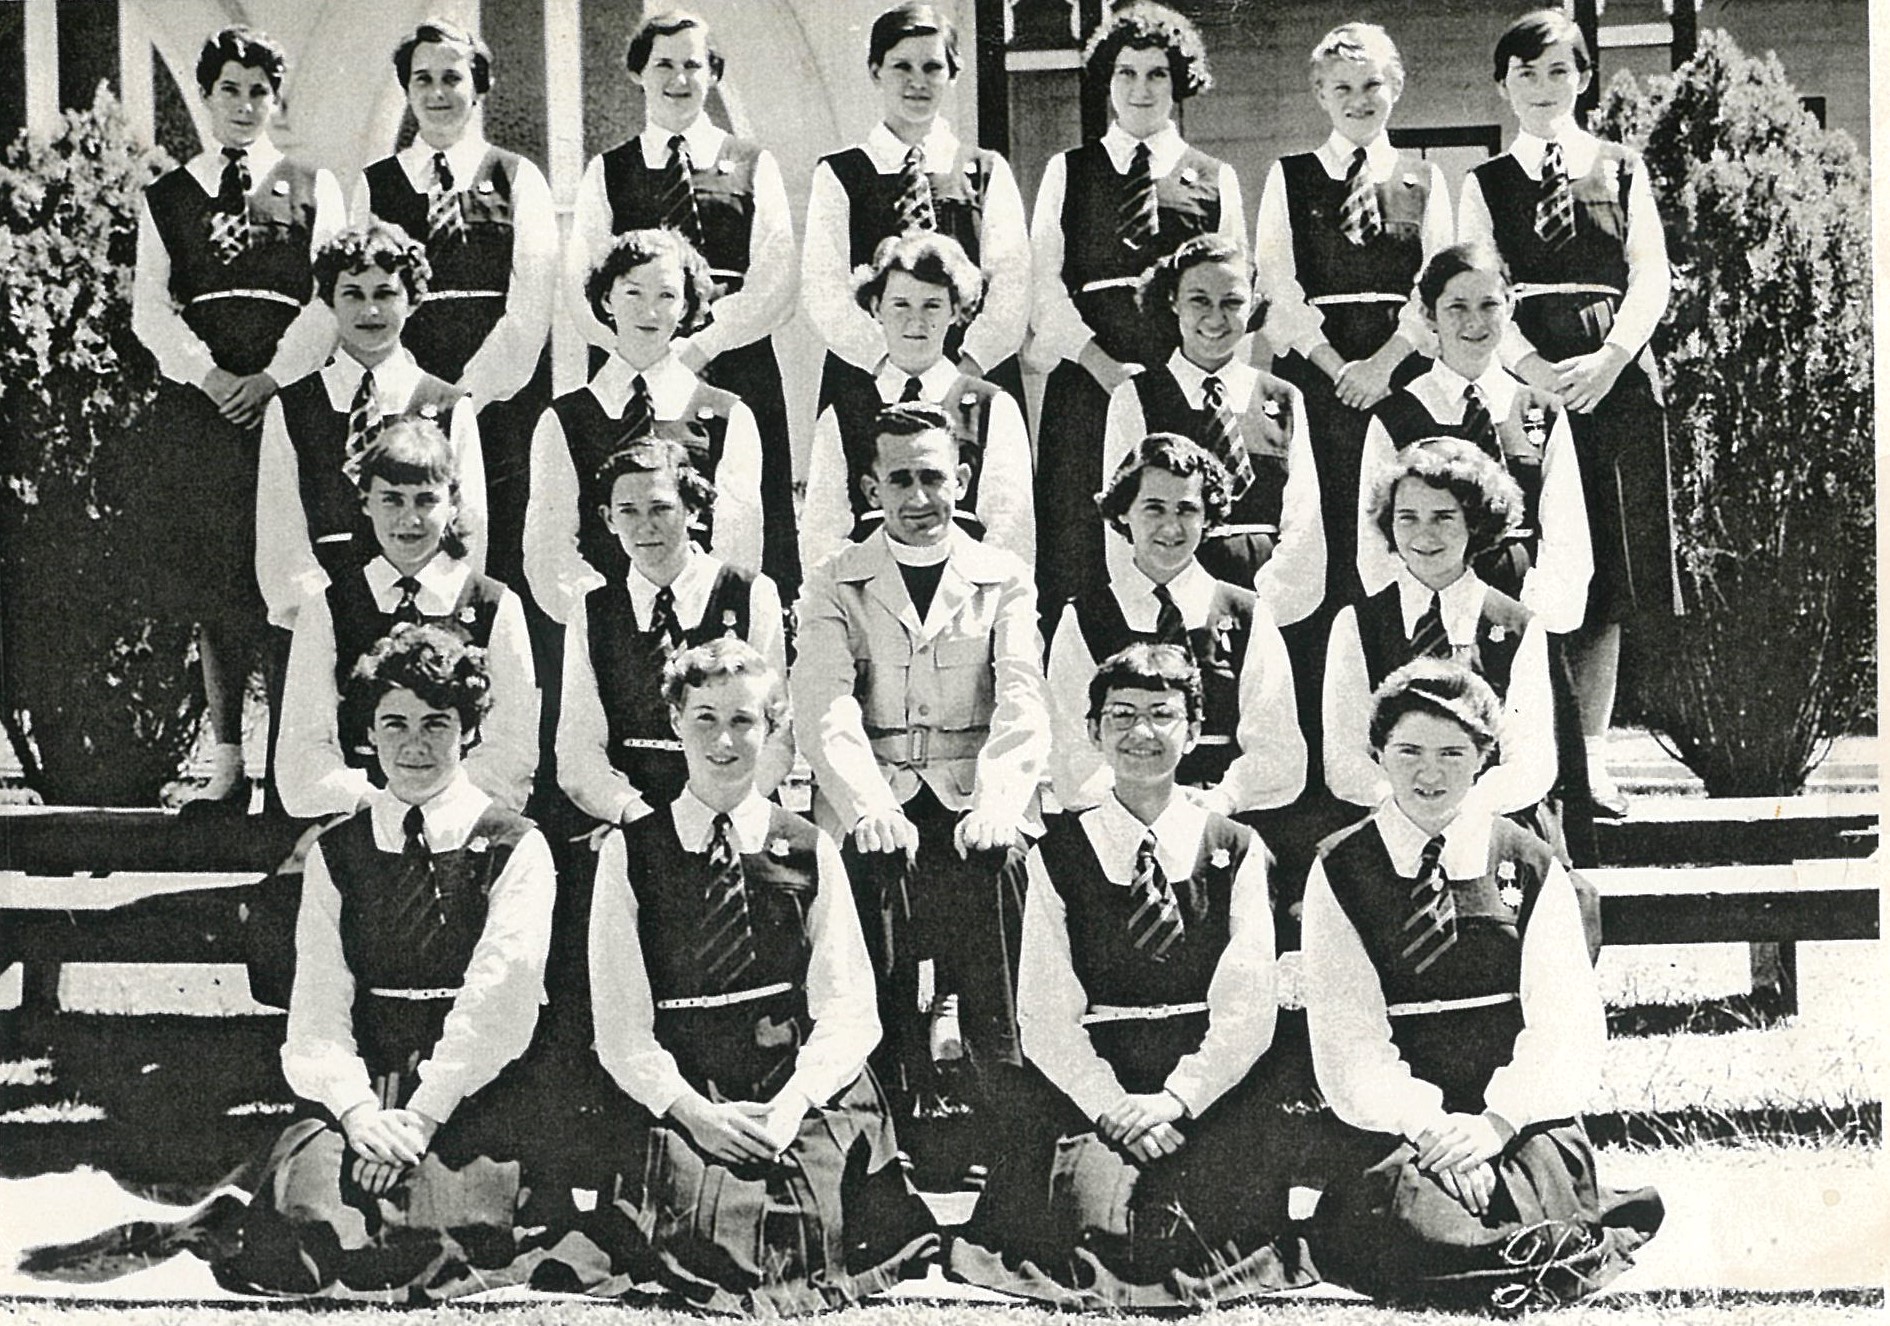 1958 Junior Class